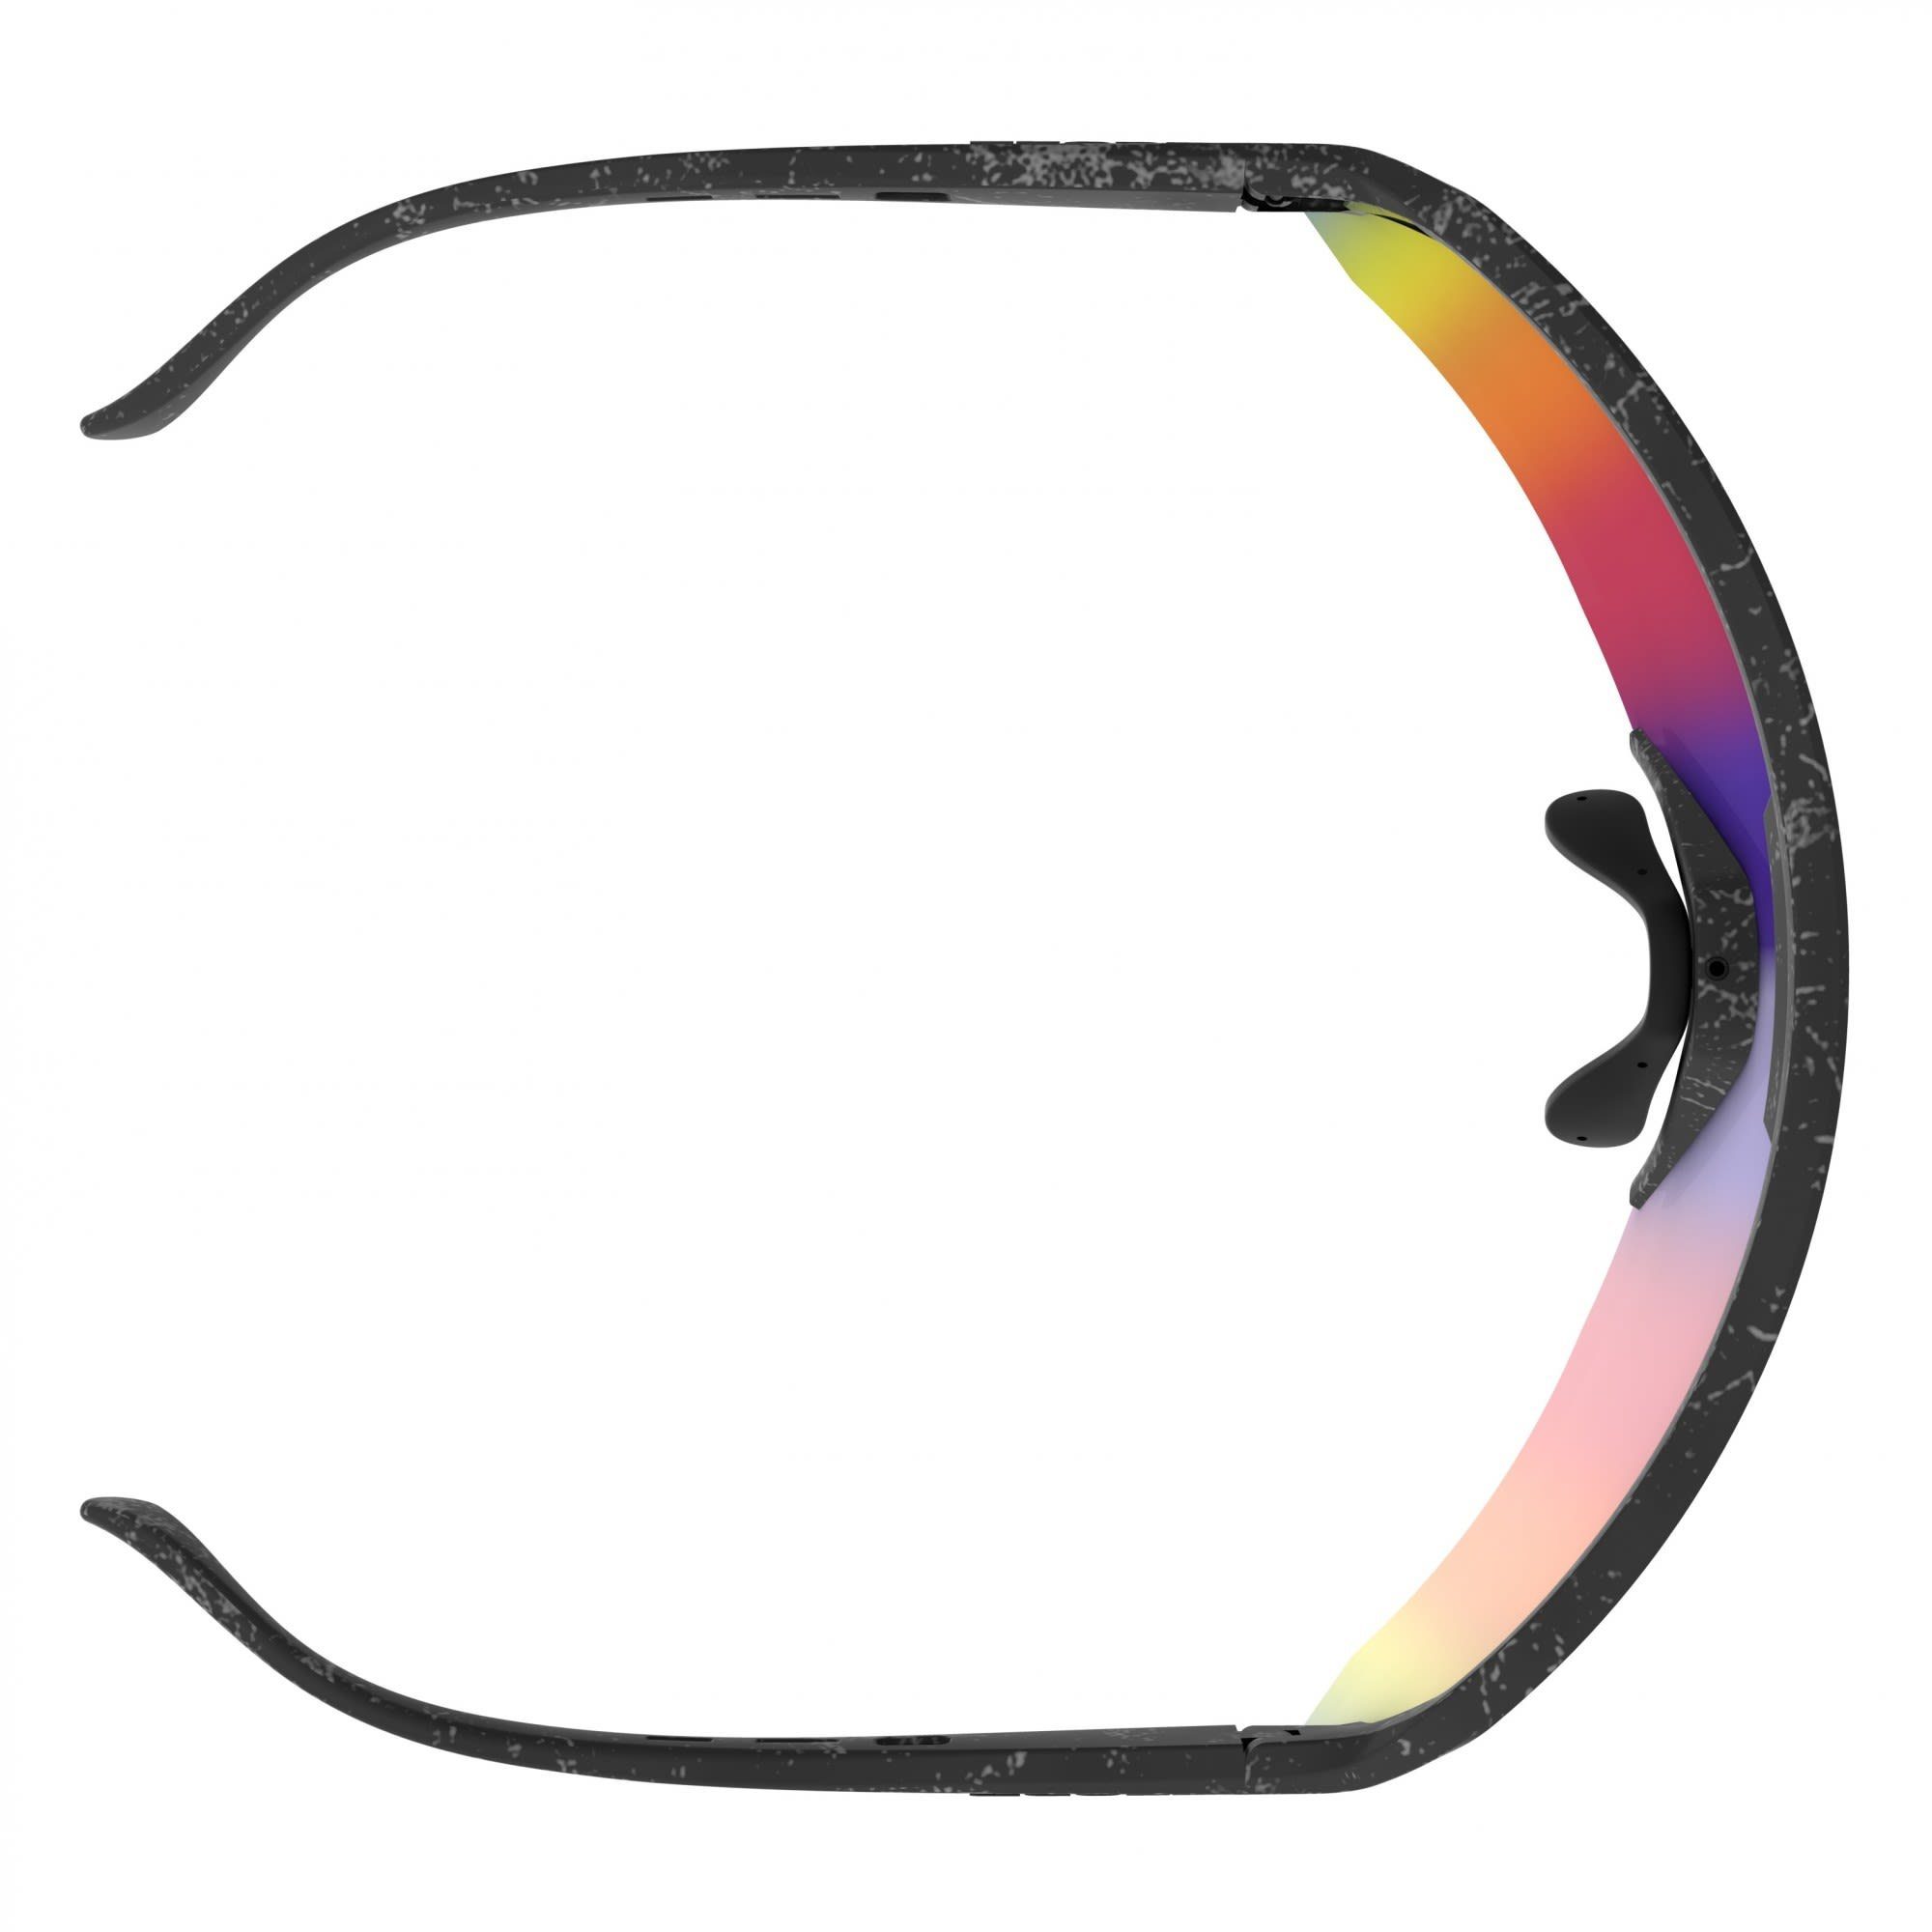 Scott Fahrradbrille Scott Teal Black Sunglasses Marble - Shield Sport Chrome Accessoires